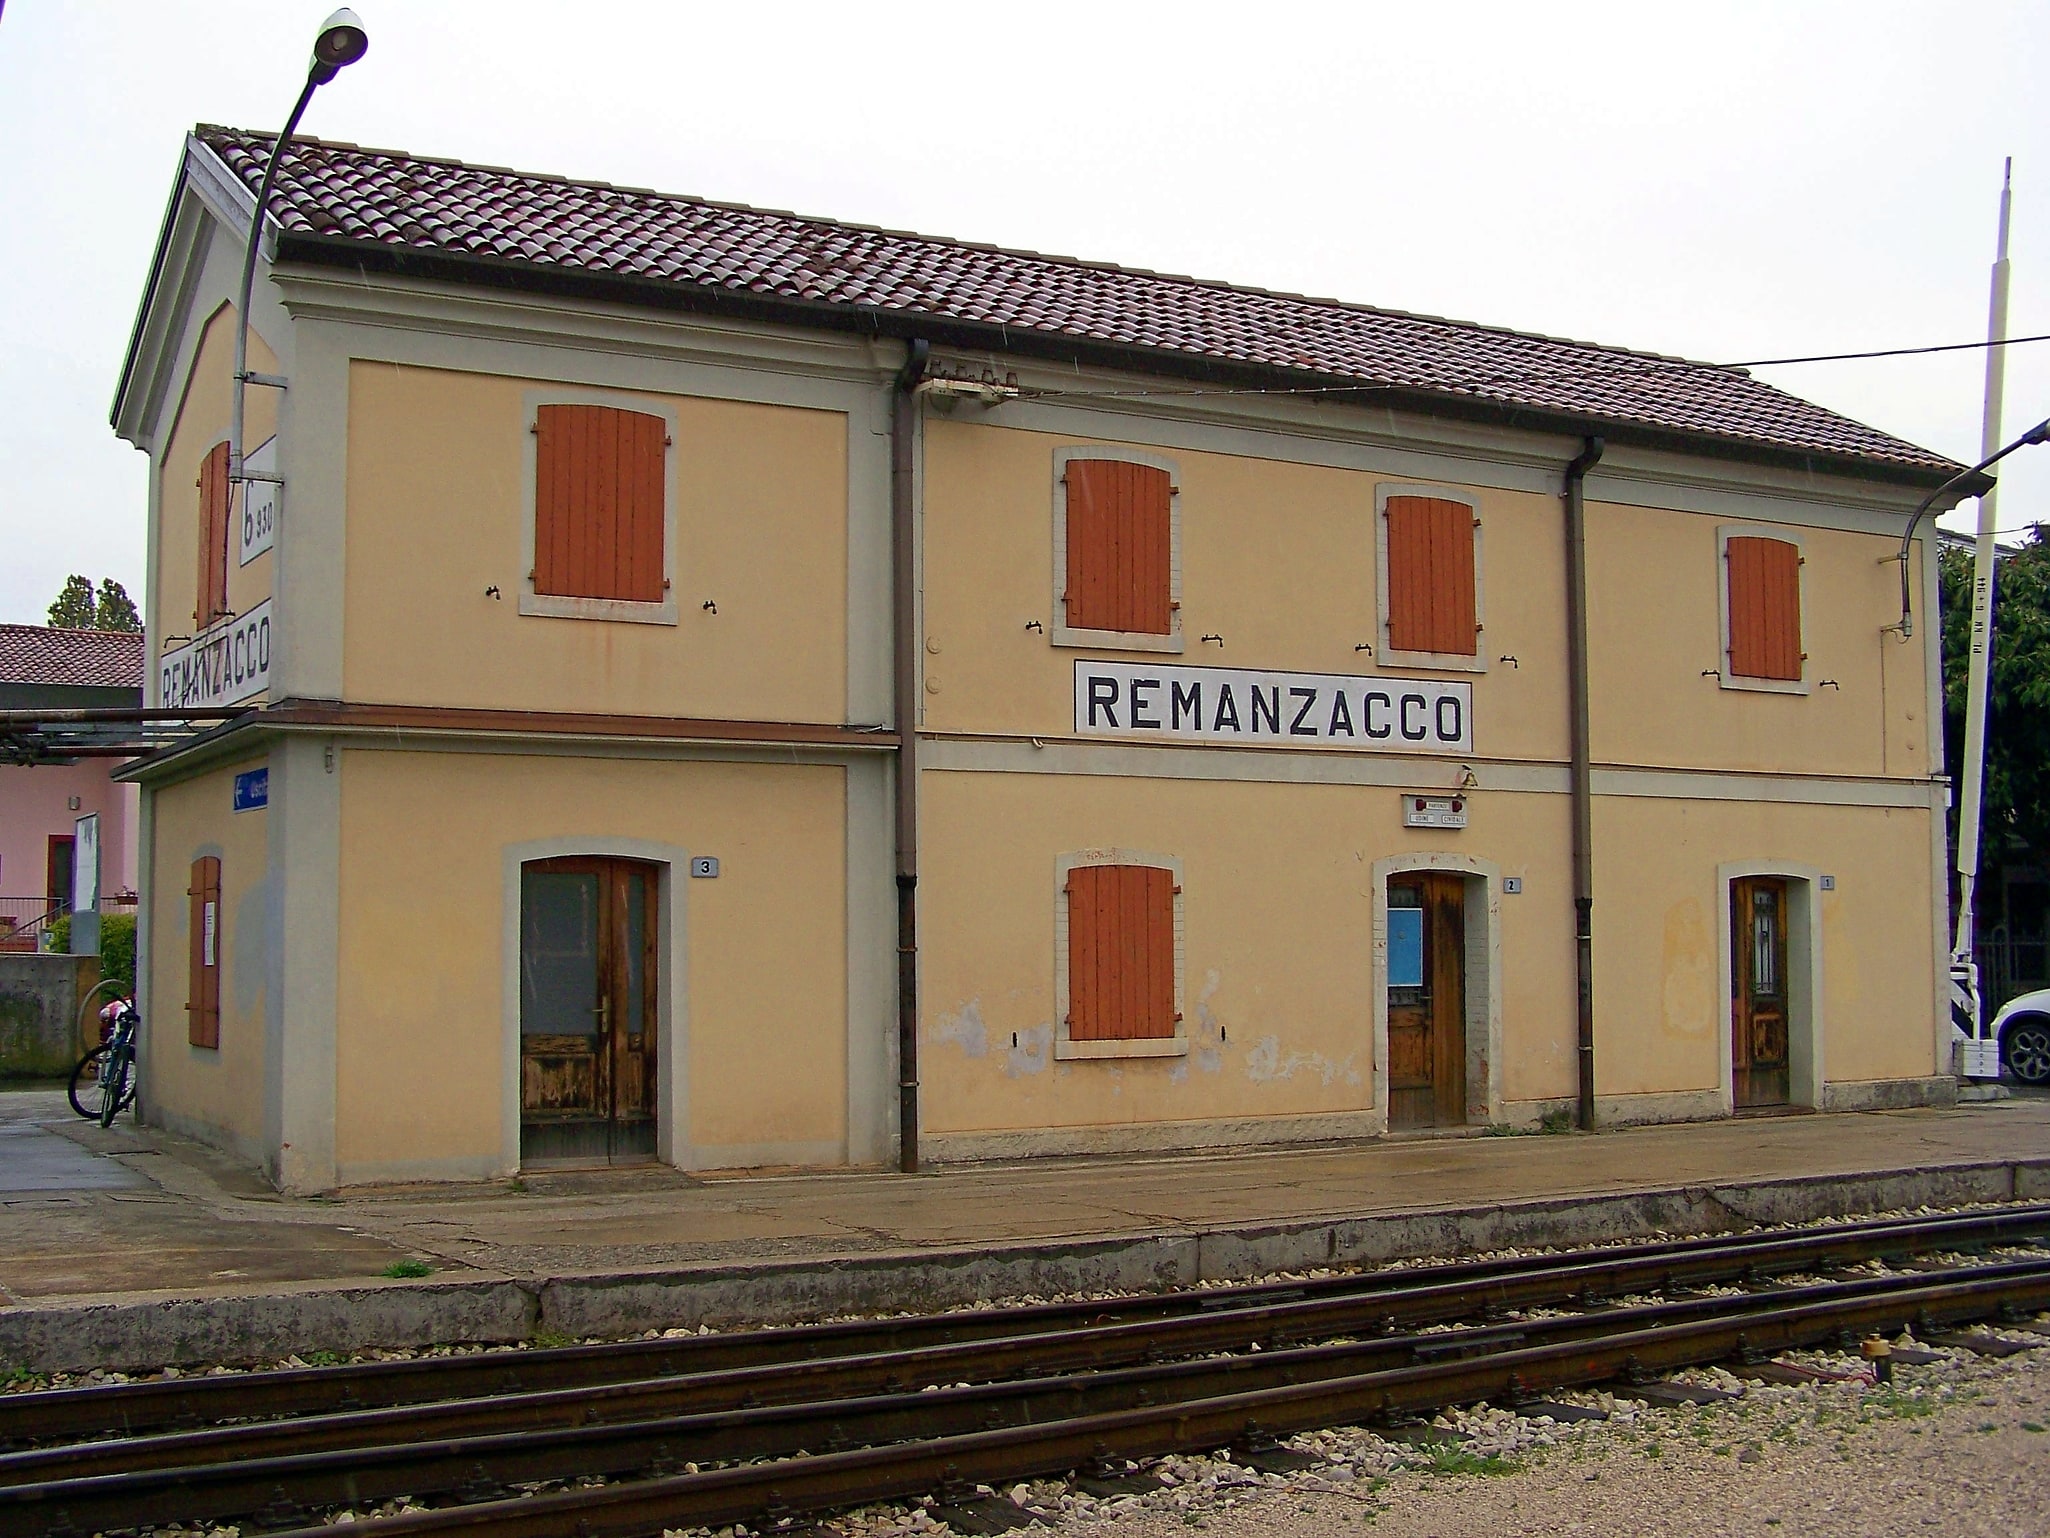 Remanzacco, Italy